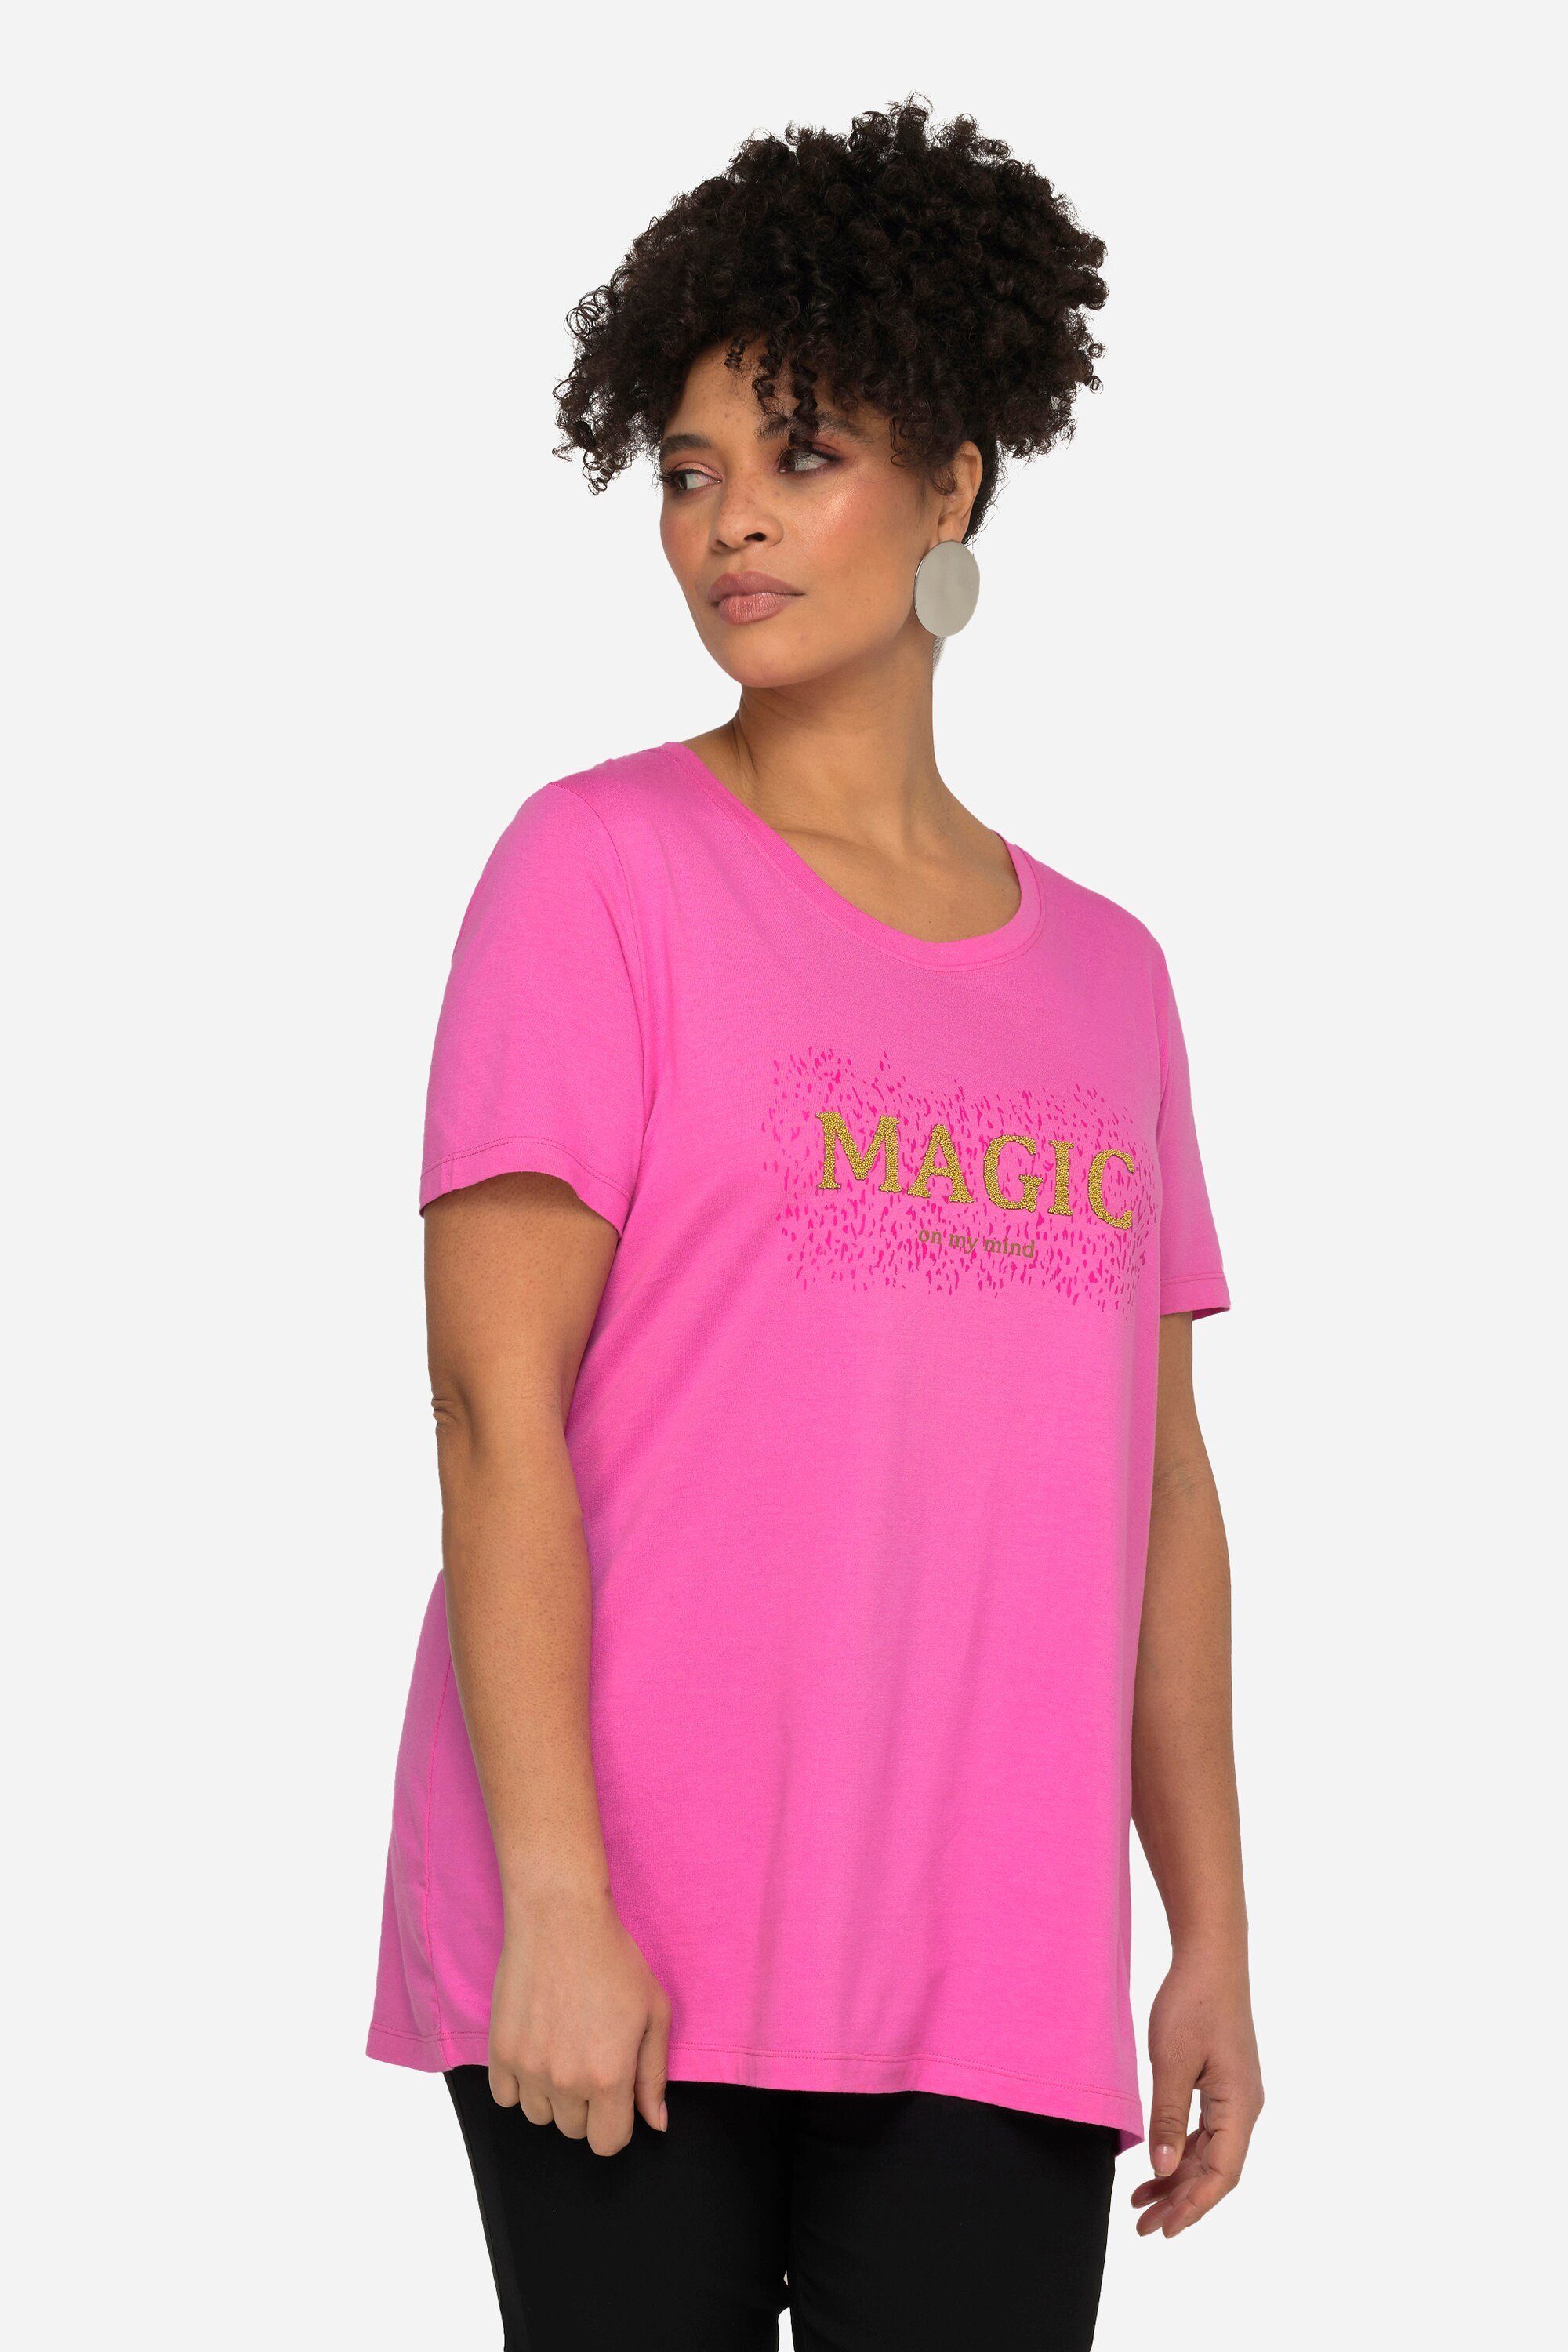 MIAMODA Rundhalsshirt T-Shirt MAGIC Rundhals Halbarm